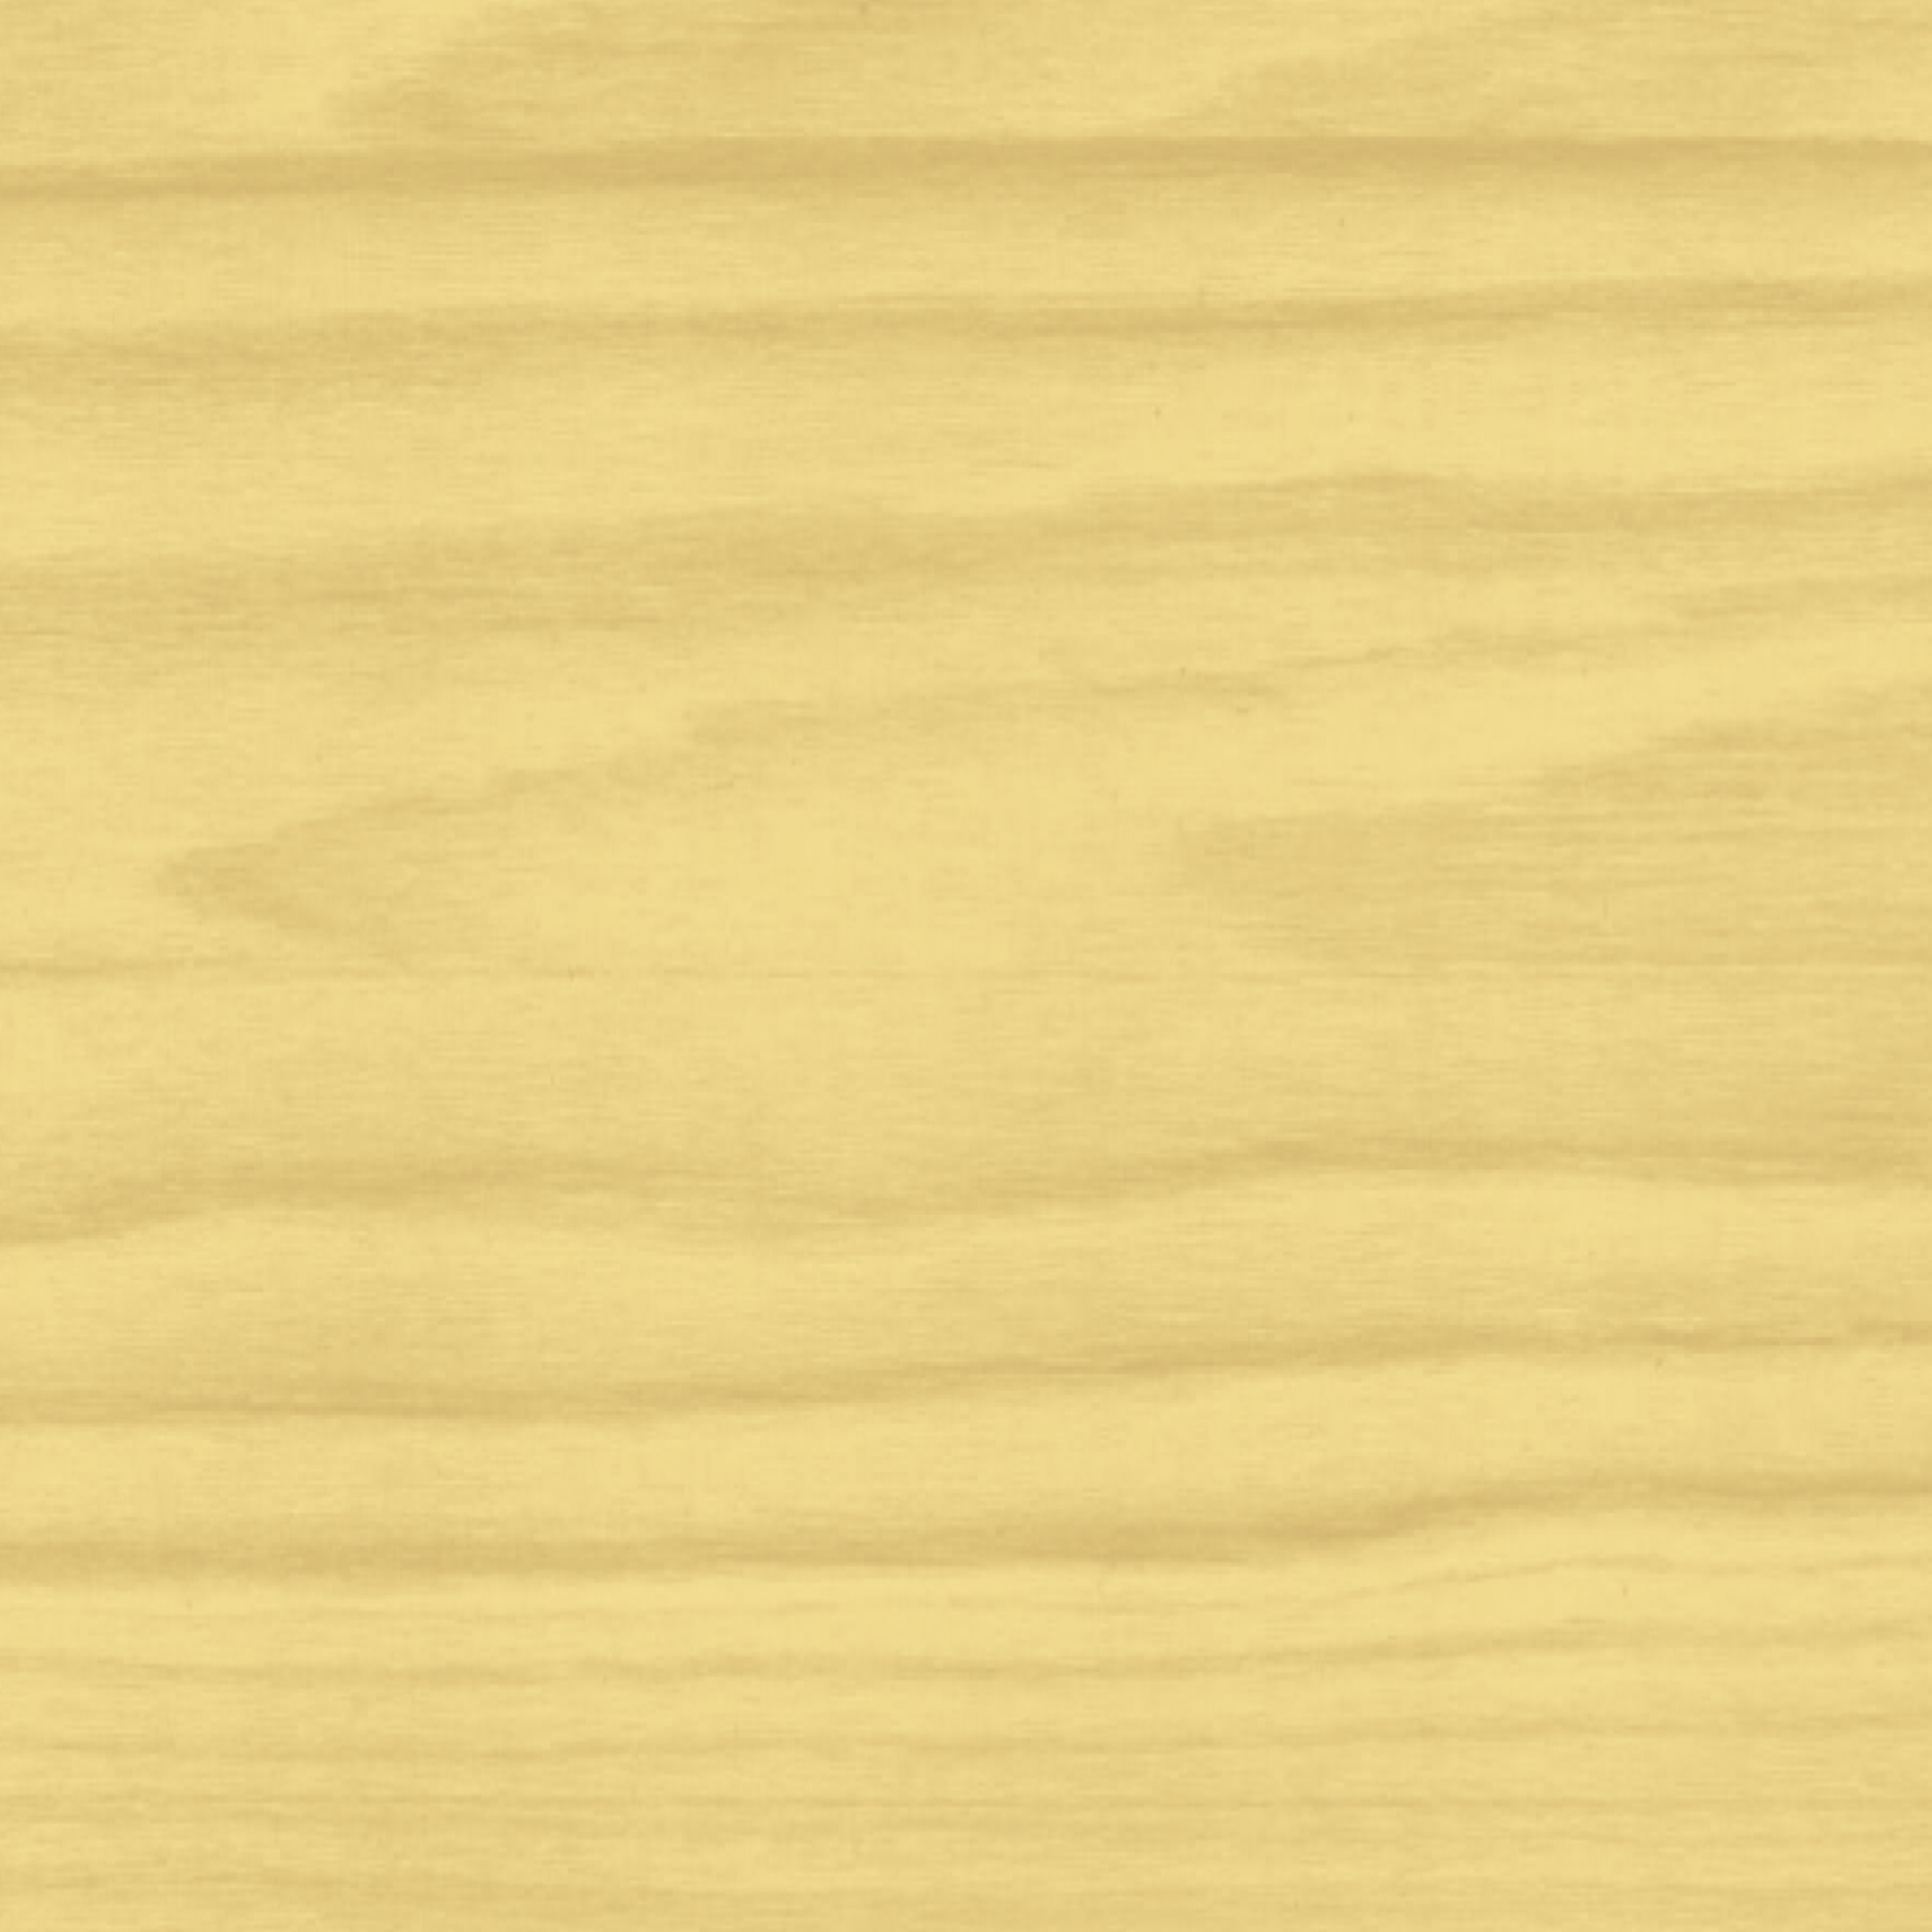 Terrassen-Öl 'Natur' beige 2,5 l + product picture